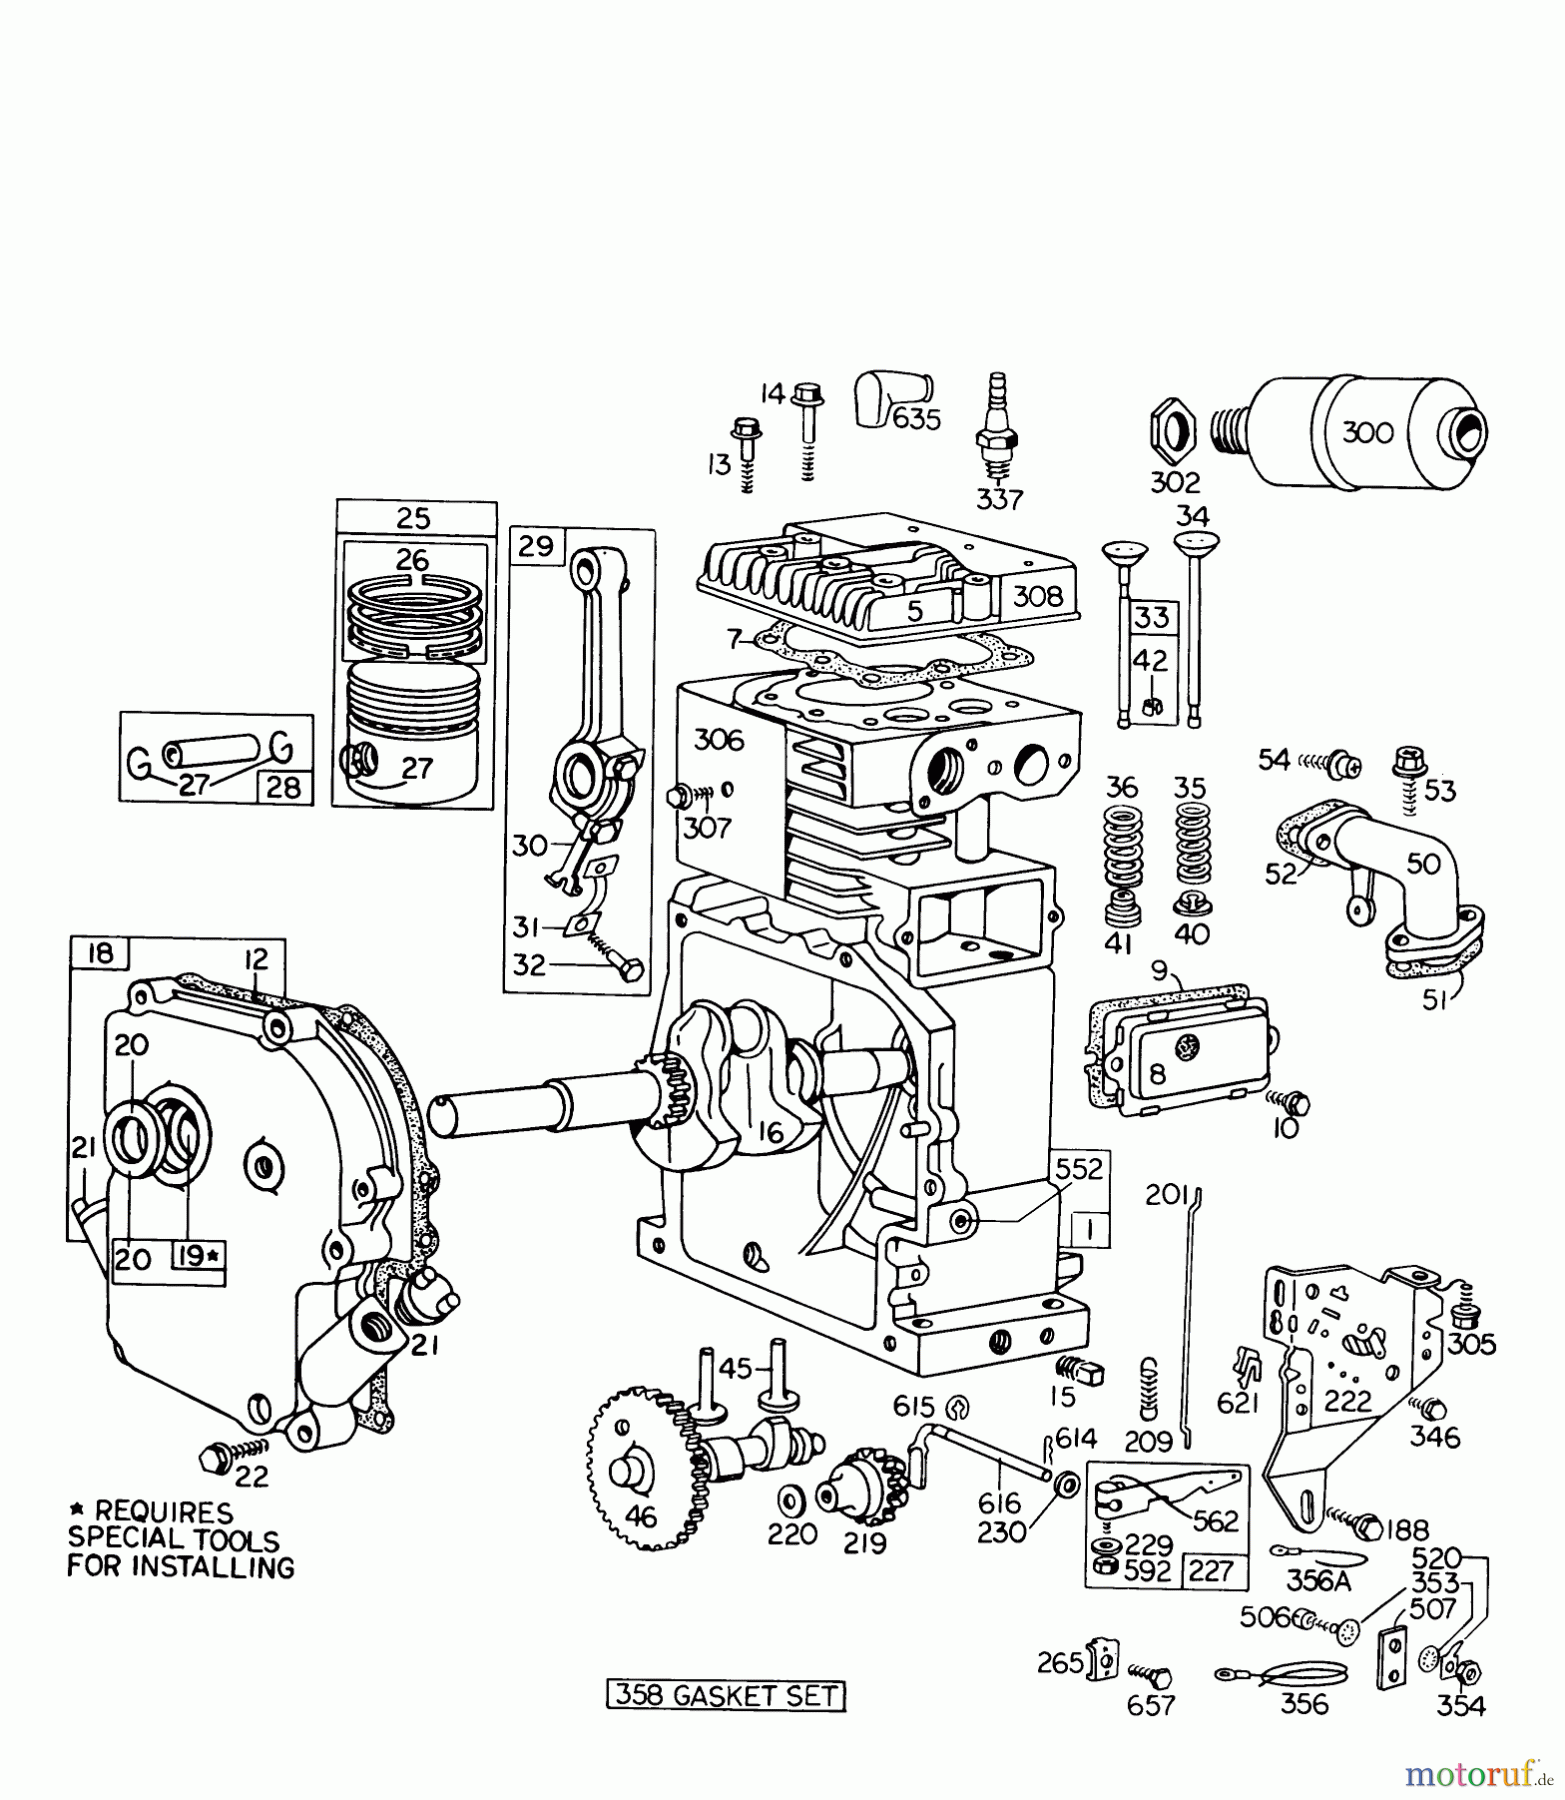  Toro Neu Snow Blowers/Snow Throwers Seite 1 31823 (832)- Toro 832 Snowthrower, 1974 (4000001-4999999) ENGINE MODEL NO. 190402 TYPE 0754 BRIGGS AND STRATTON